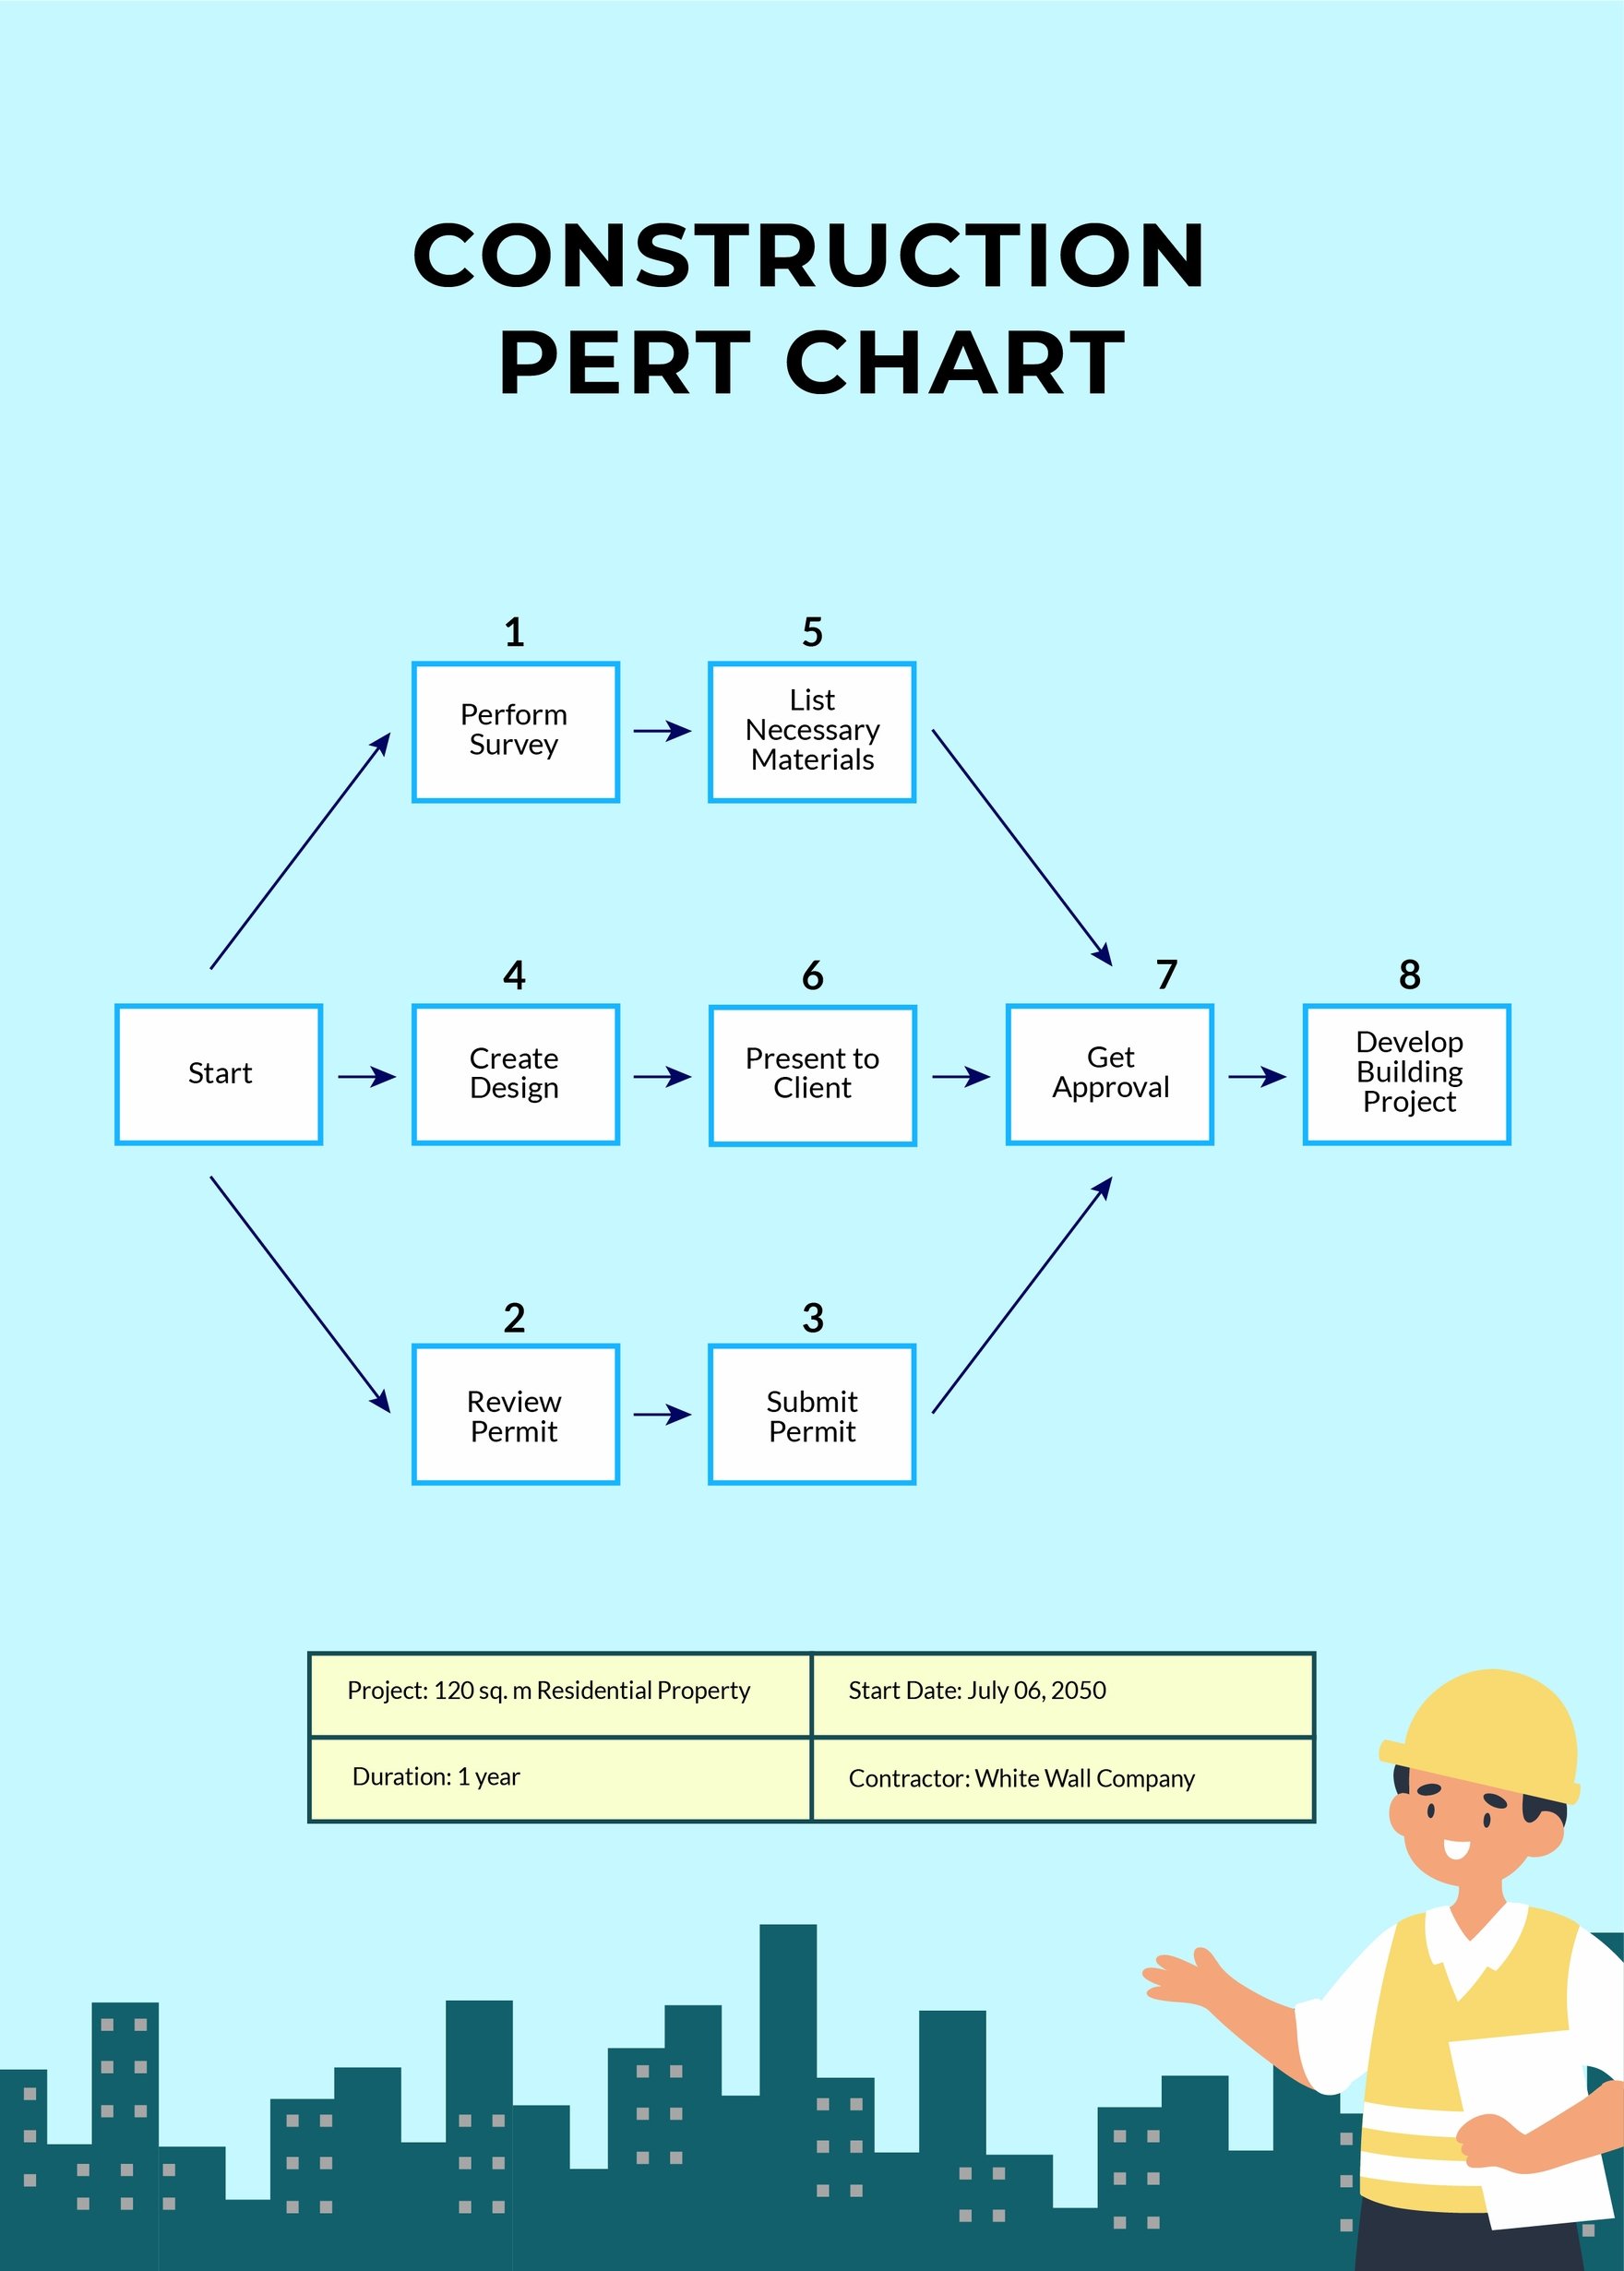 Construction PERT Chart